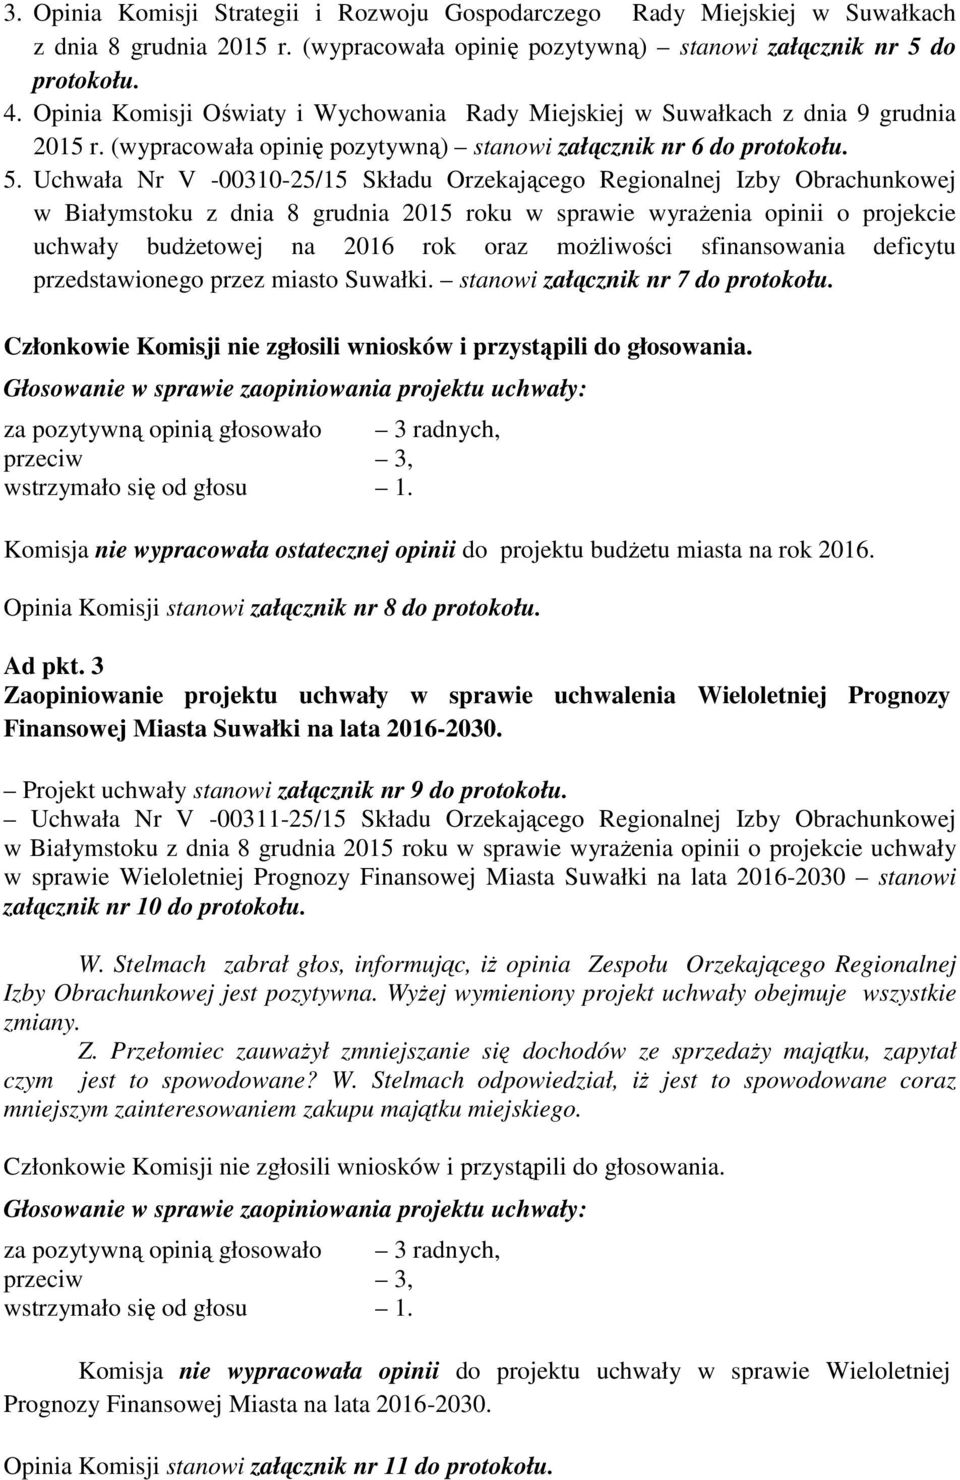 Uchwała Nr V -00310-25/15 Składu Orzekającego Regionalnej Izby Obrachunkowej w Białymstoku z dnia 8 grudnia 2015 roku w sprawie wyraŝenia opinii o projekcie uchwały budŝetowej na 2016 rok oraz